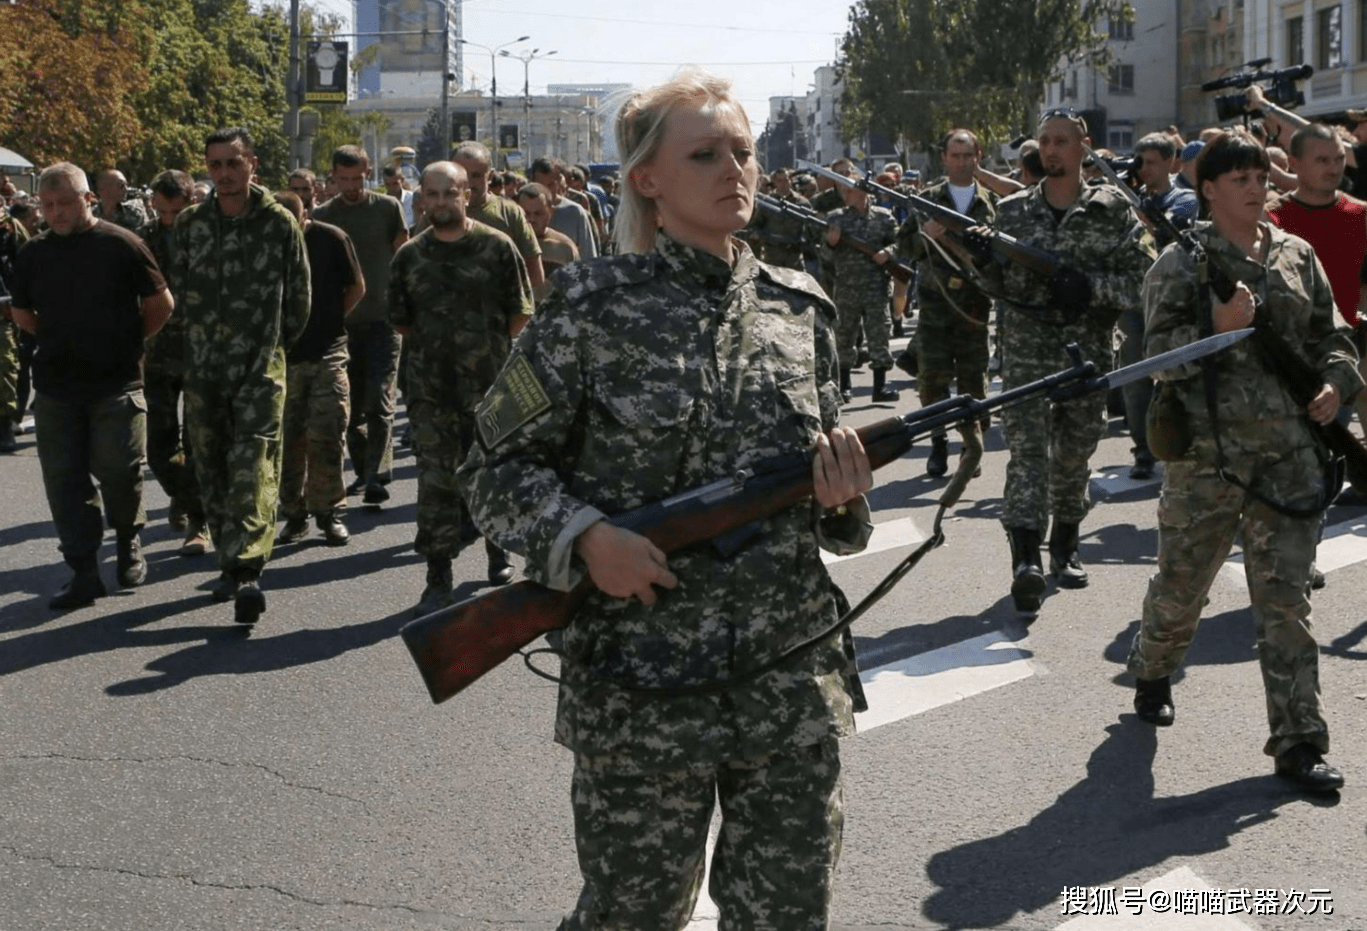 当时的乌克兰军队极有可能准备了数万人的军队,还有炮兵部队和特种